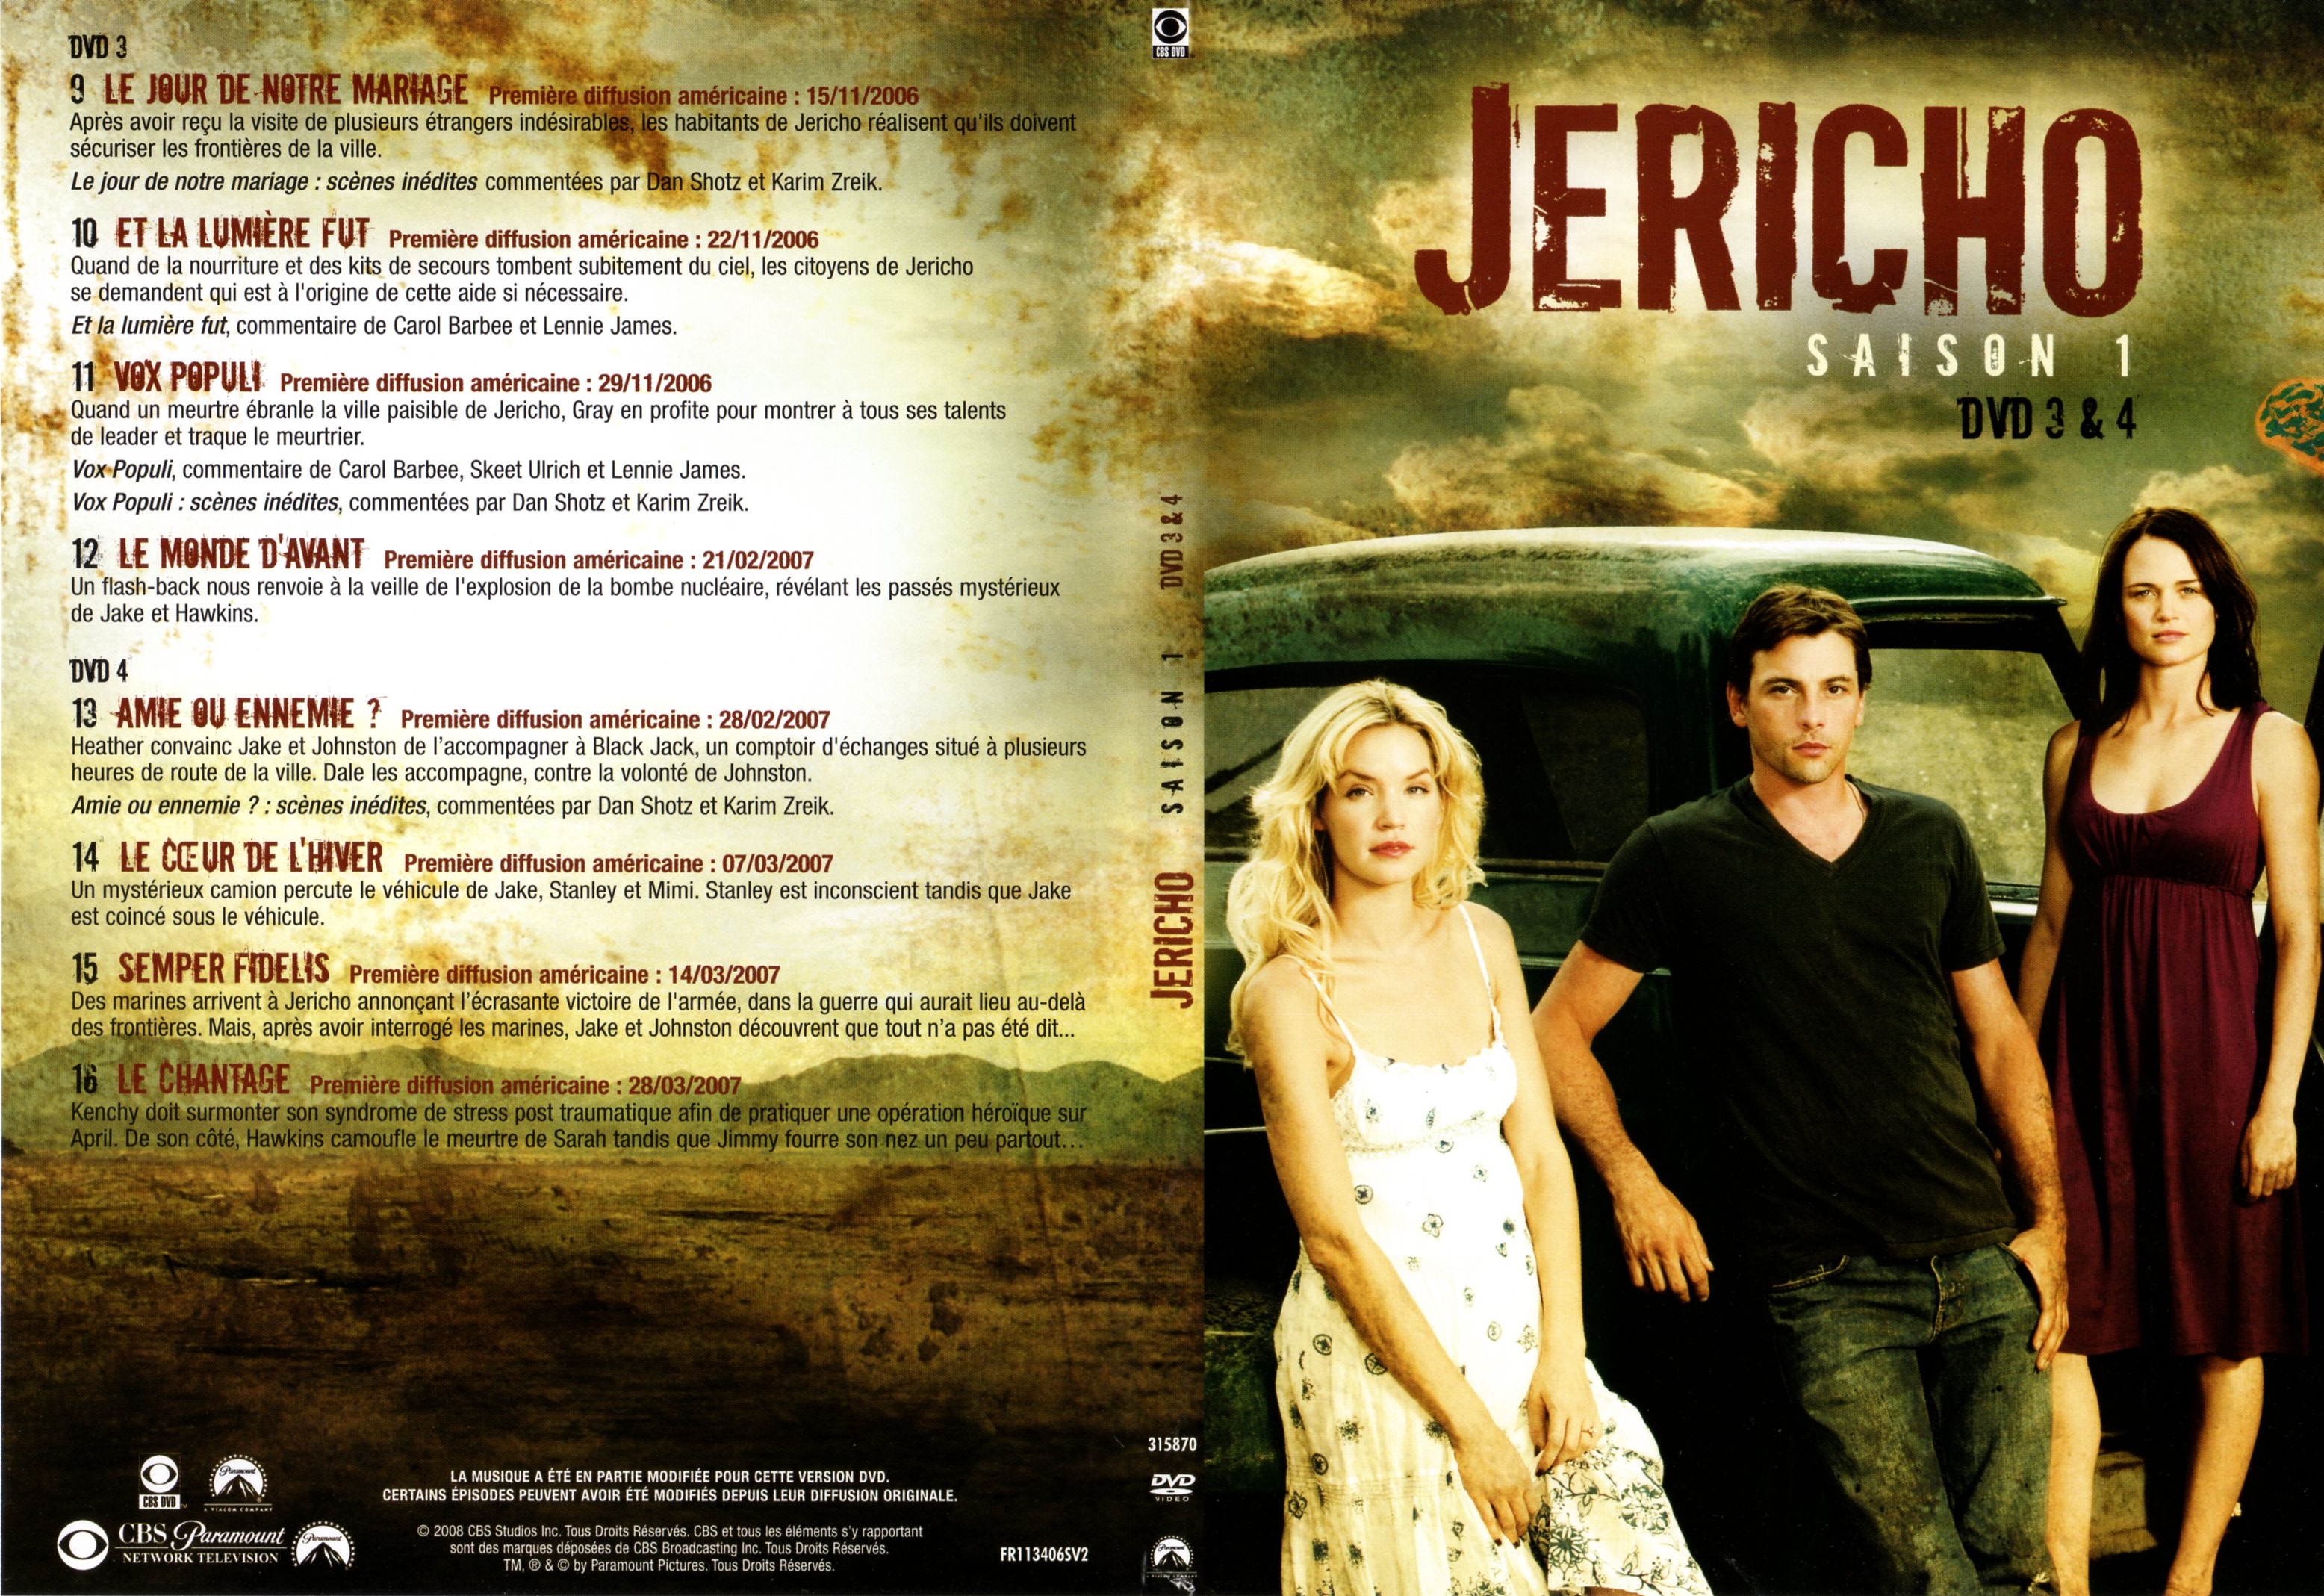 Jaquette DVD Jericho Saison 1 DVD 2